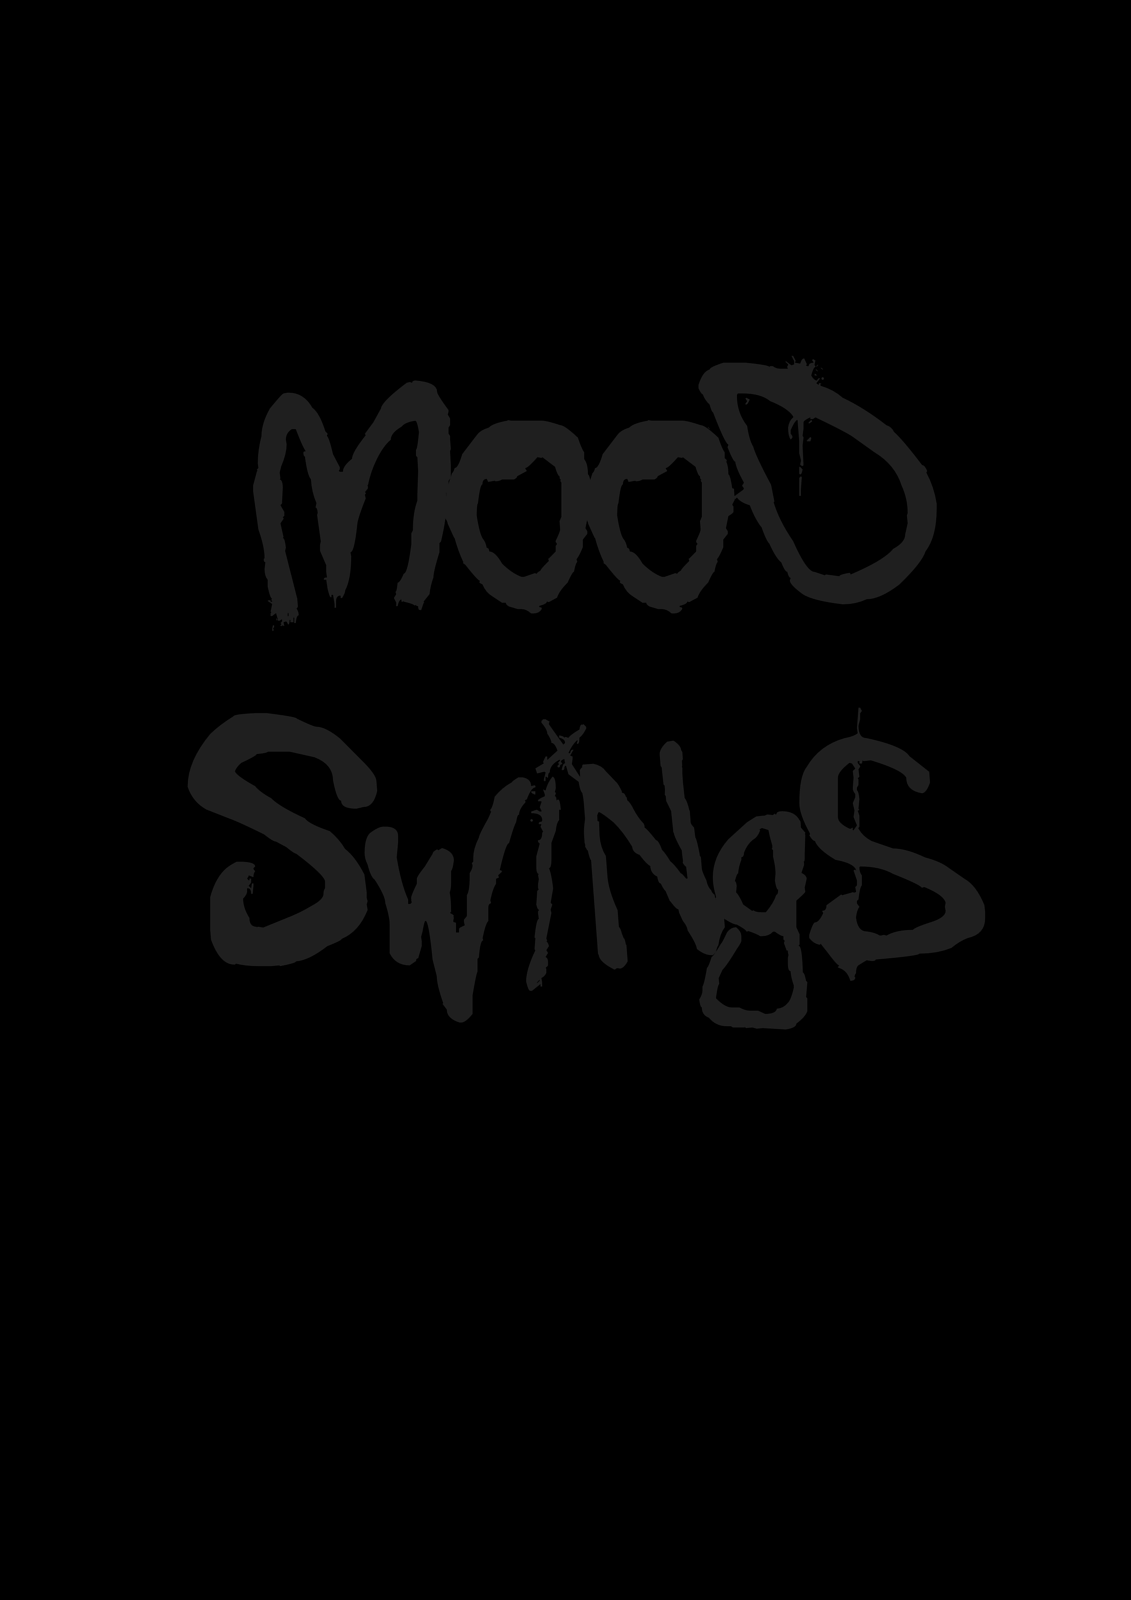 Mood swings print